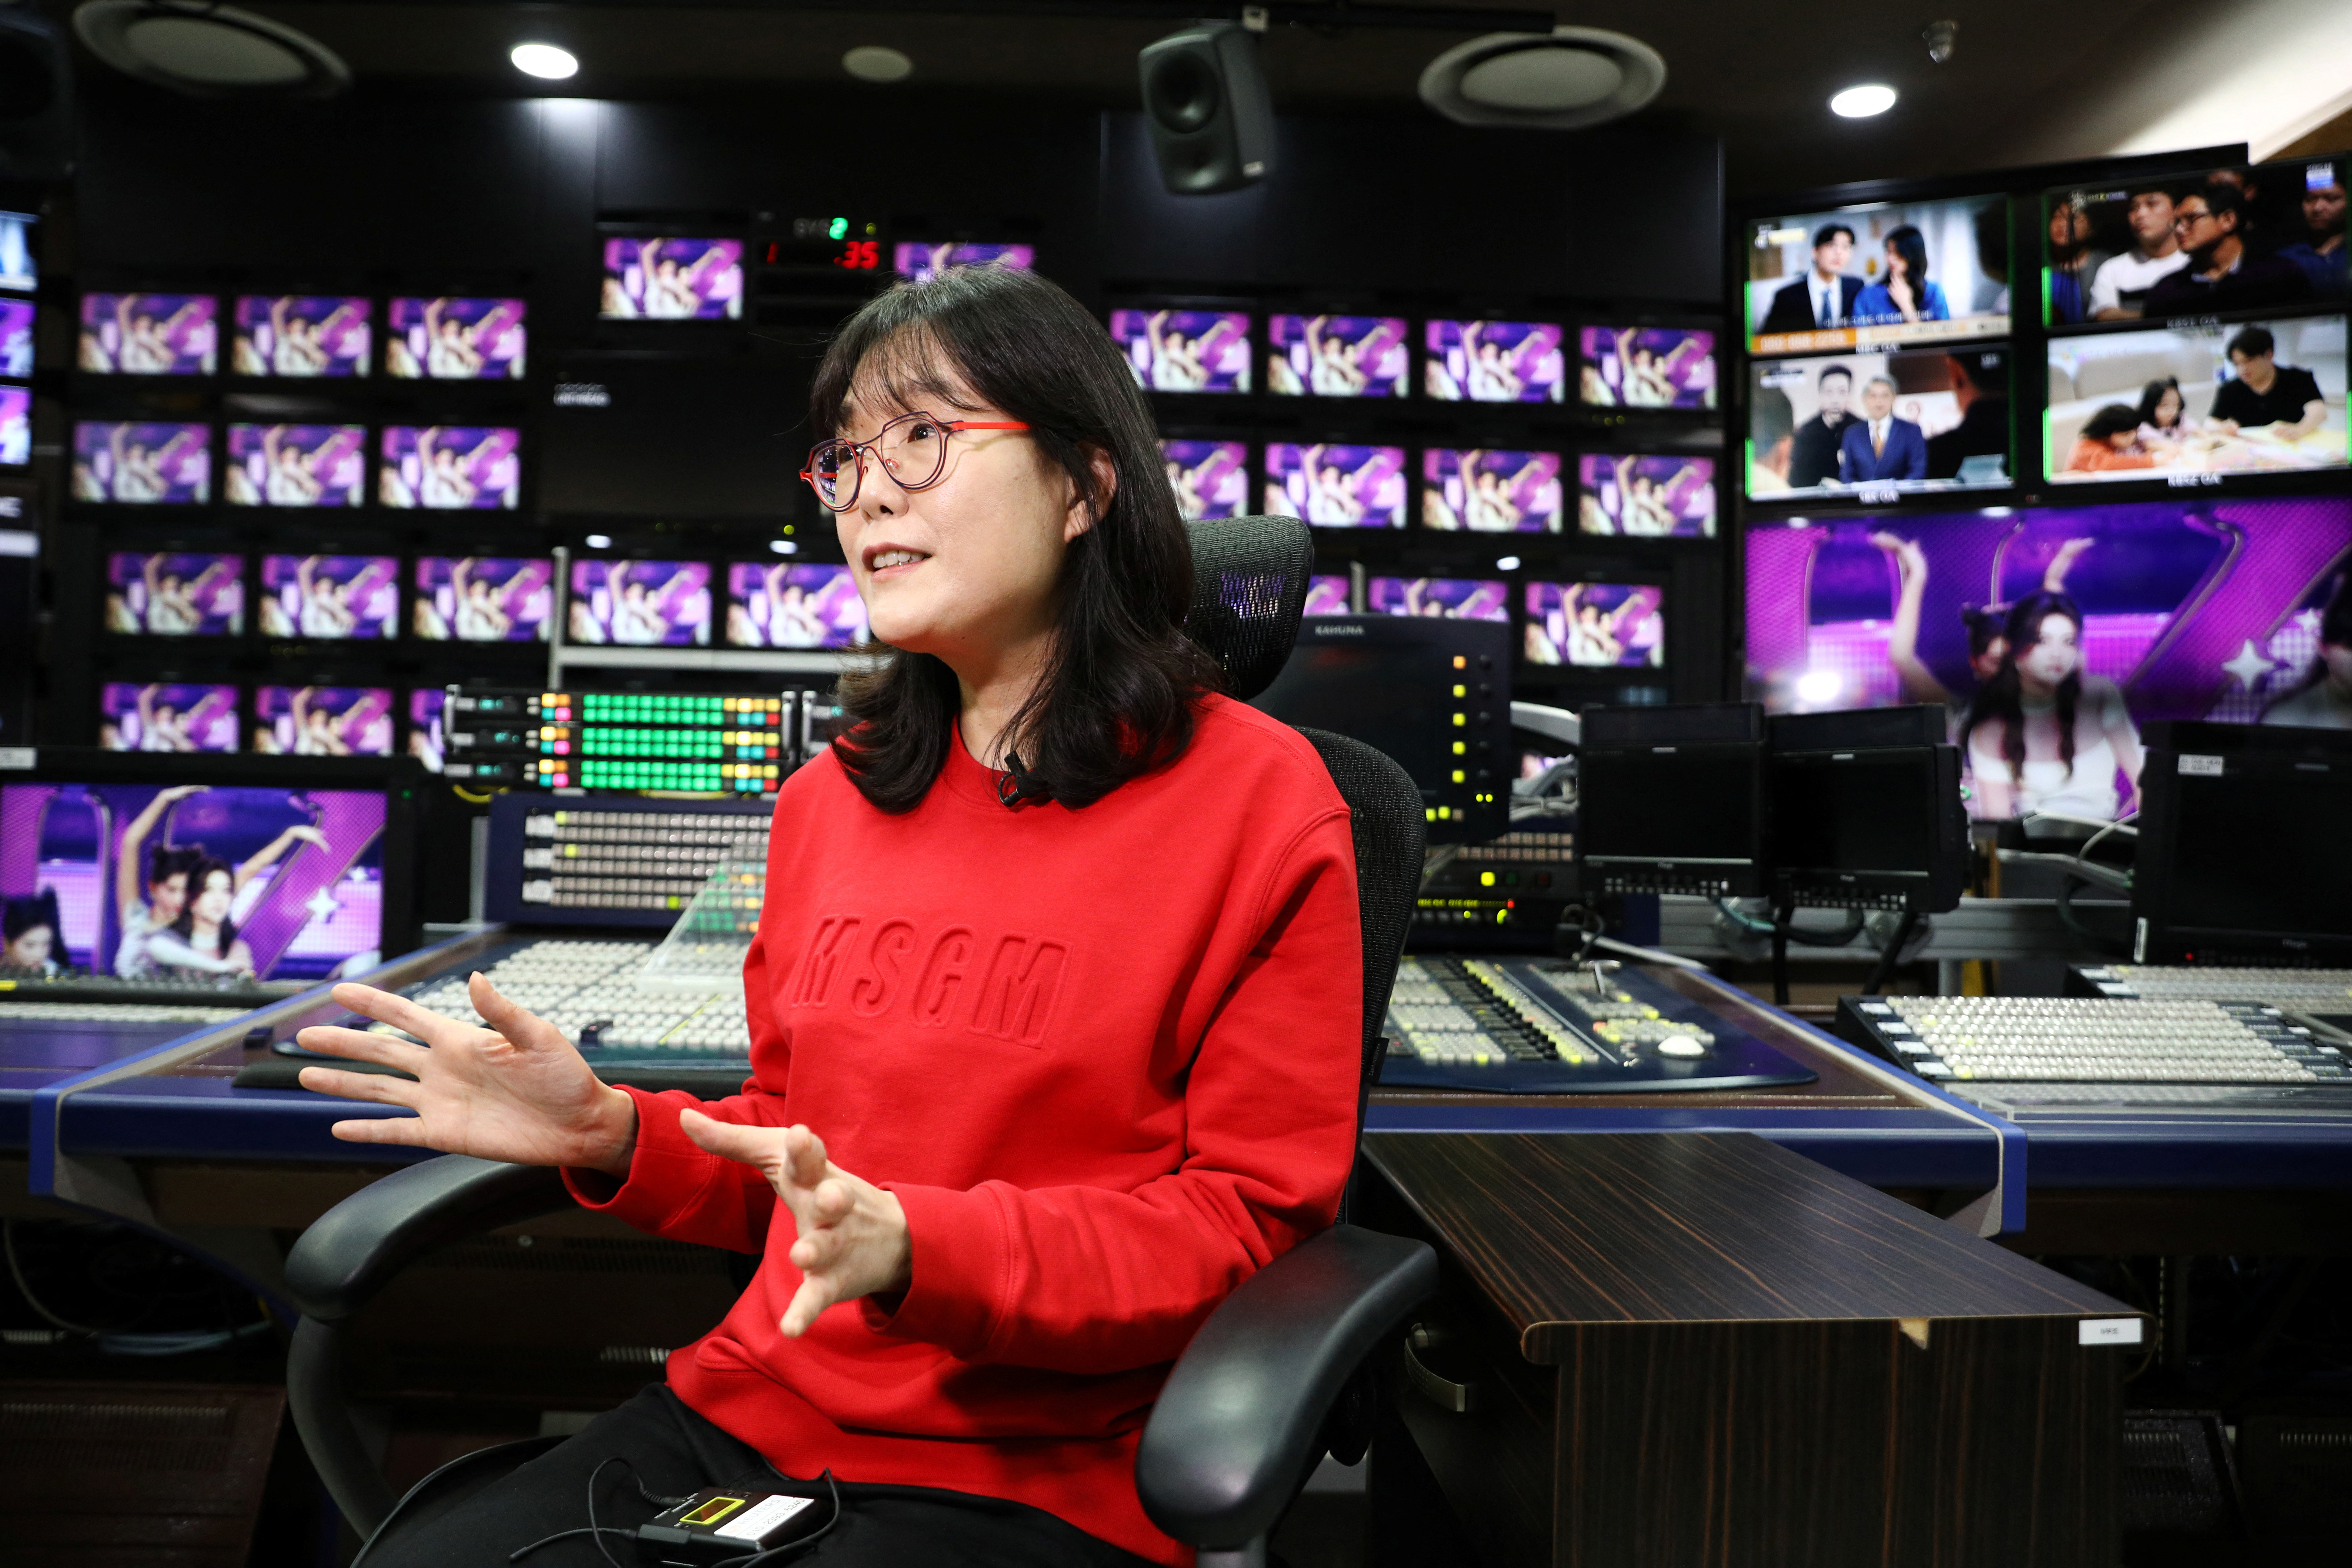 In K-Pop's Quest for Global Growth, Korean Fans Feel Cast Aside